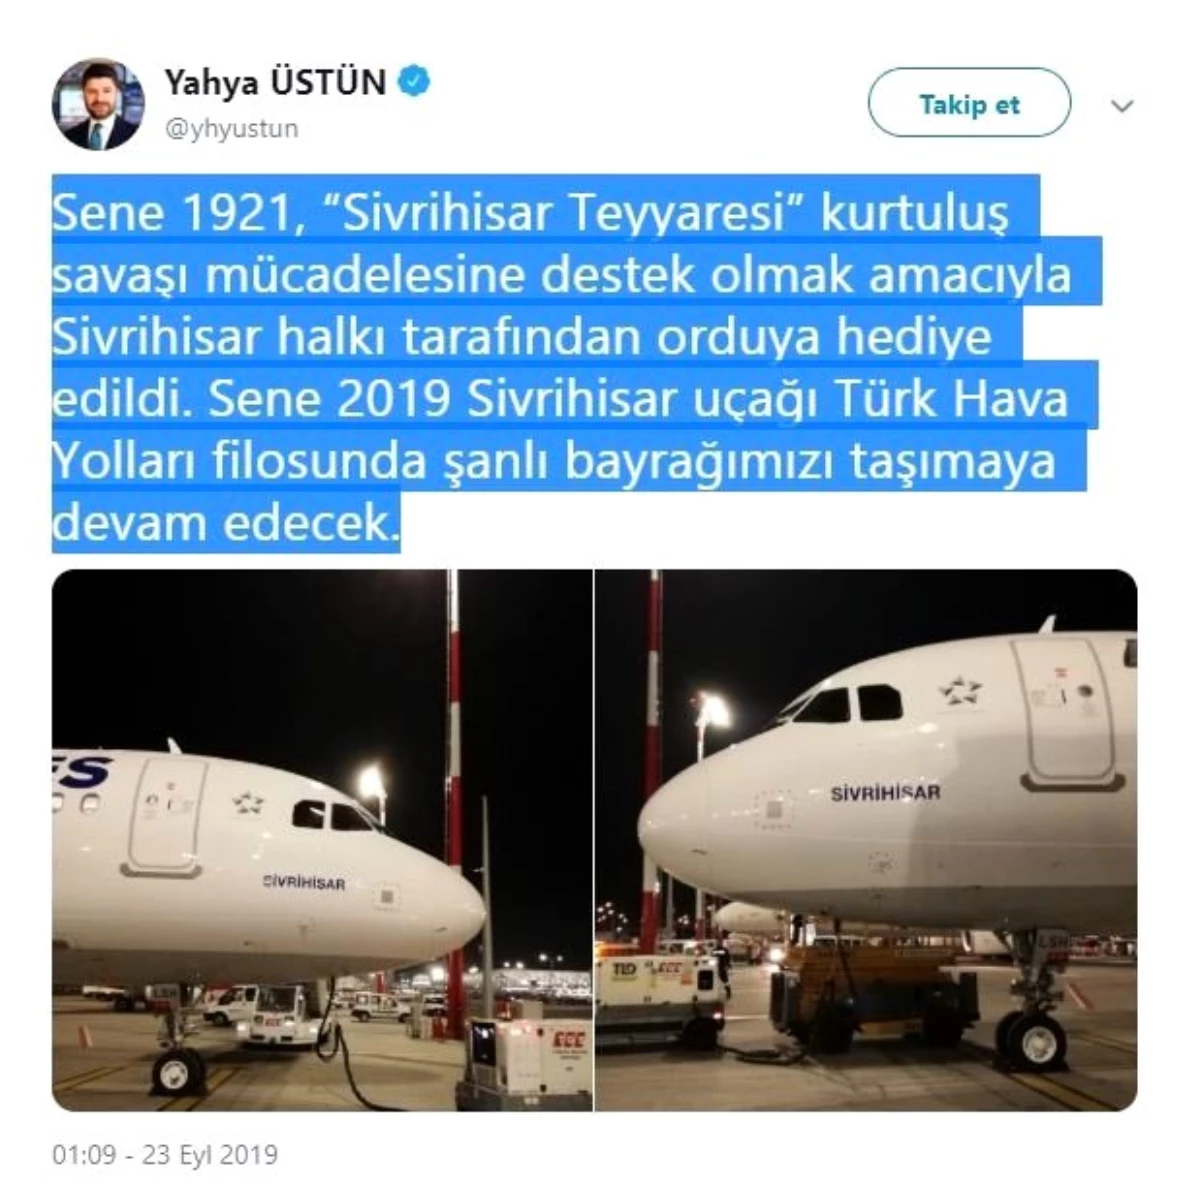 Türk Hava Yolları yeni uçağına Sivrihisar adını verdi